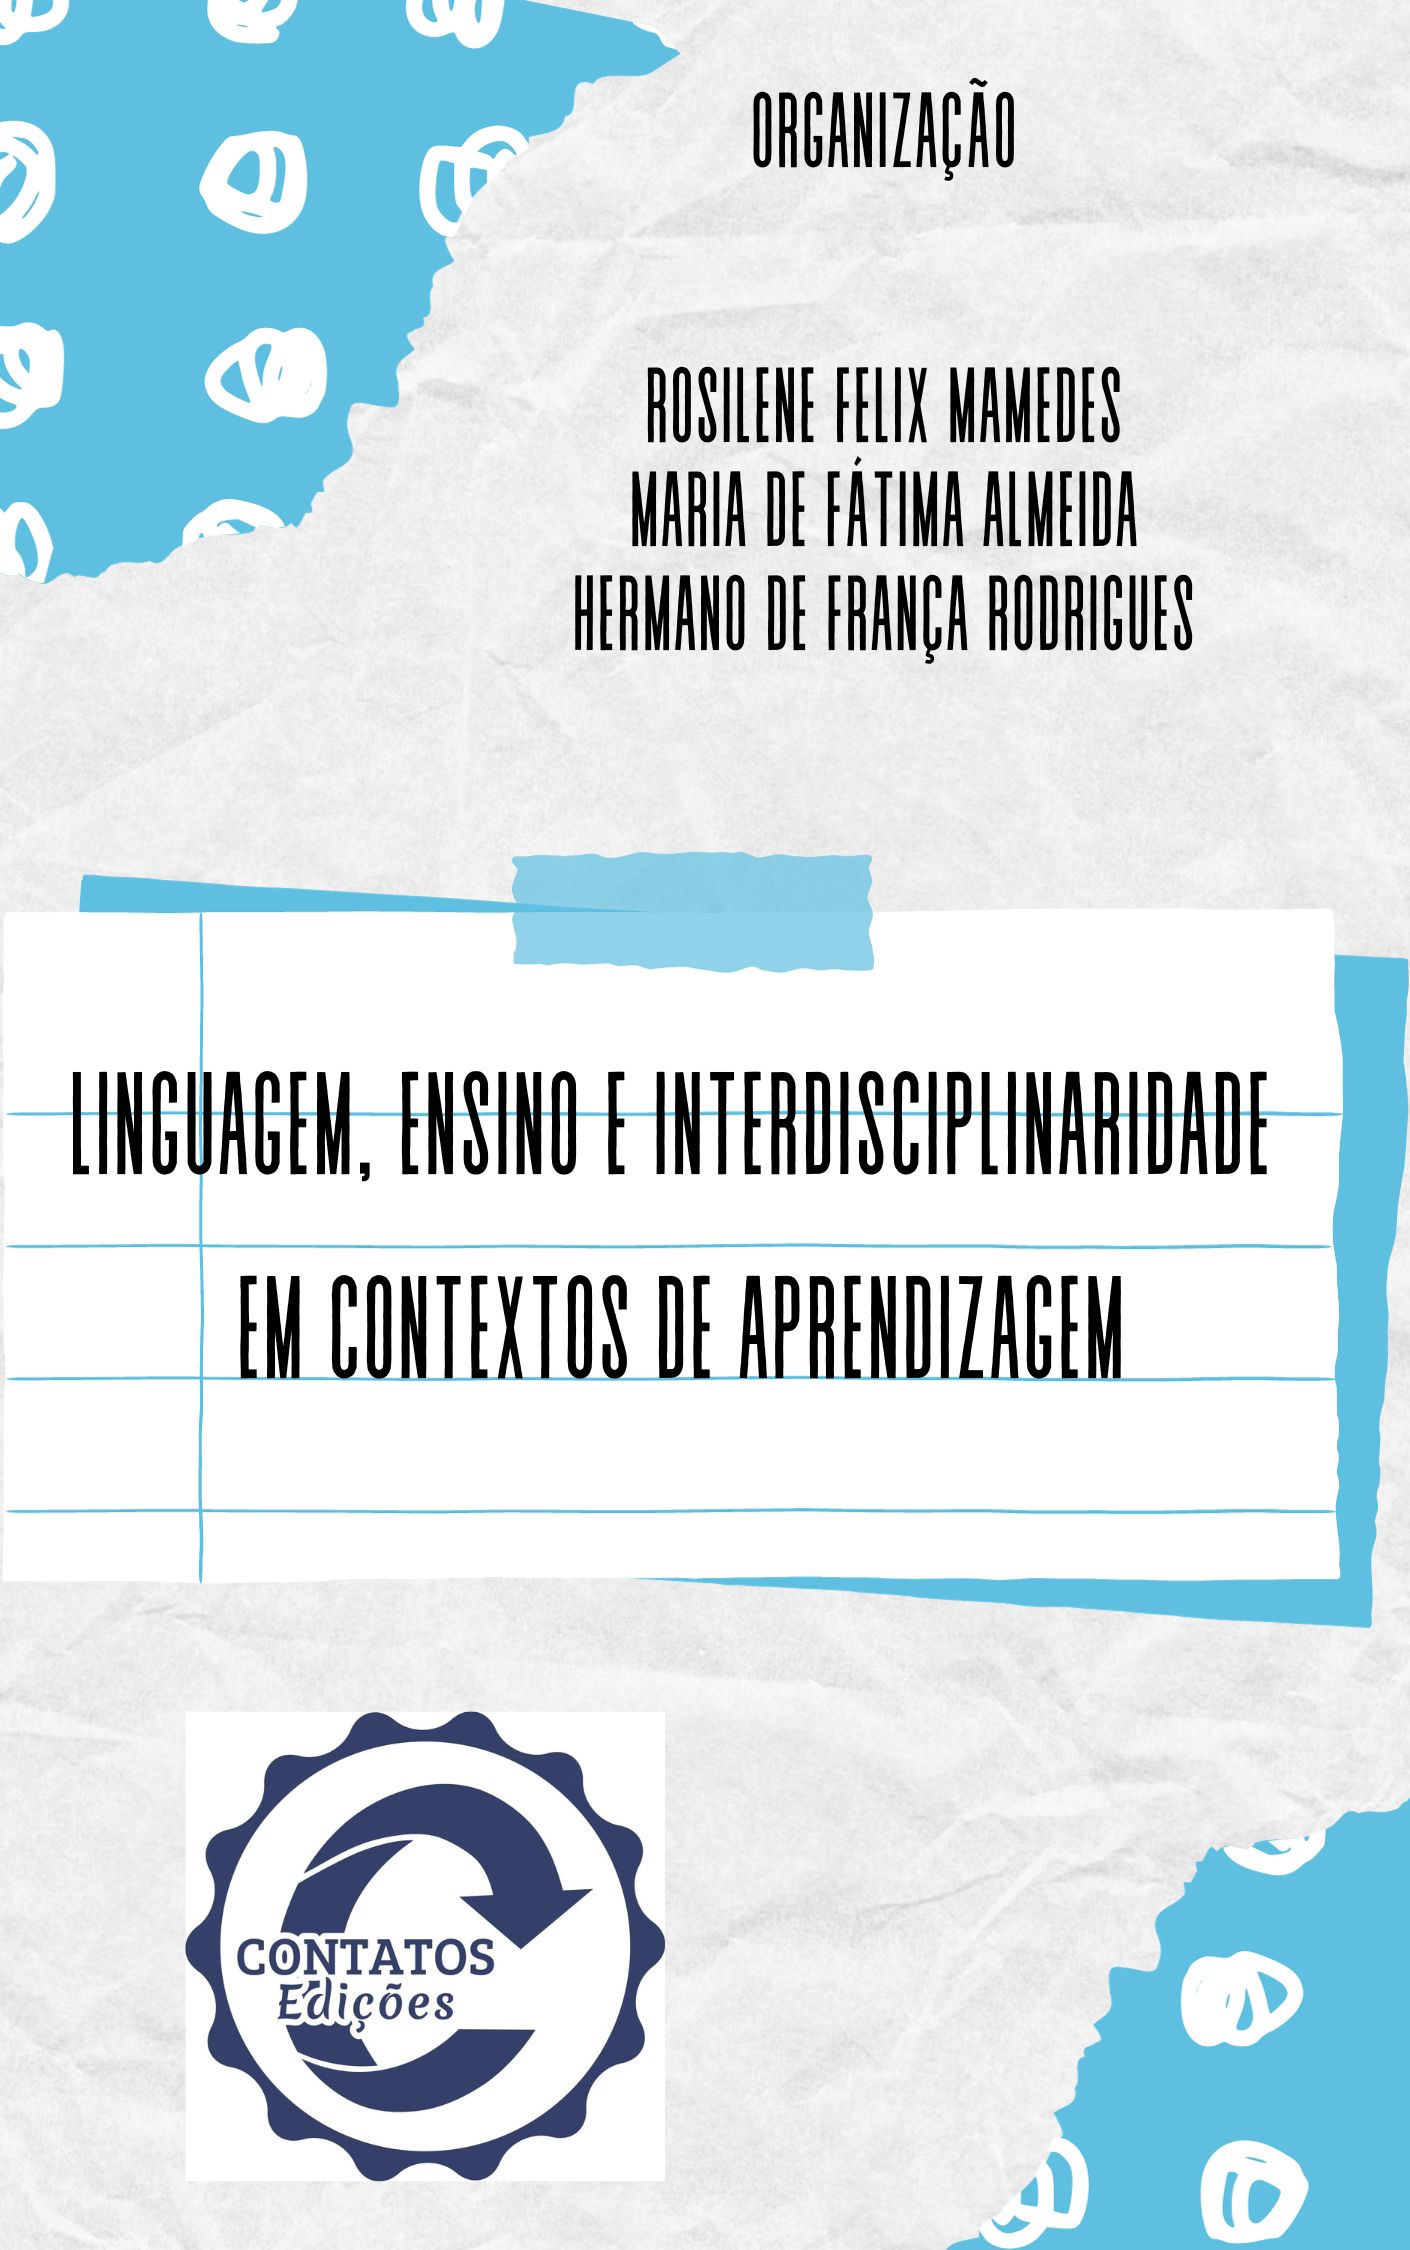 Linguagem, Ensino e Práticas Interdisciplinares em contextos de aprendizagem